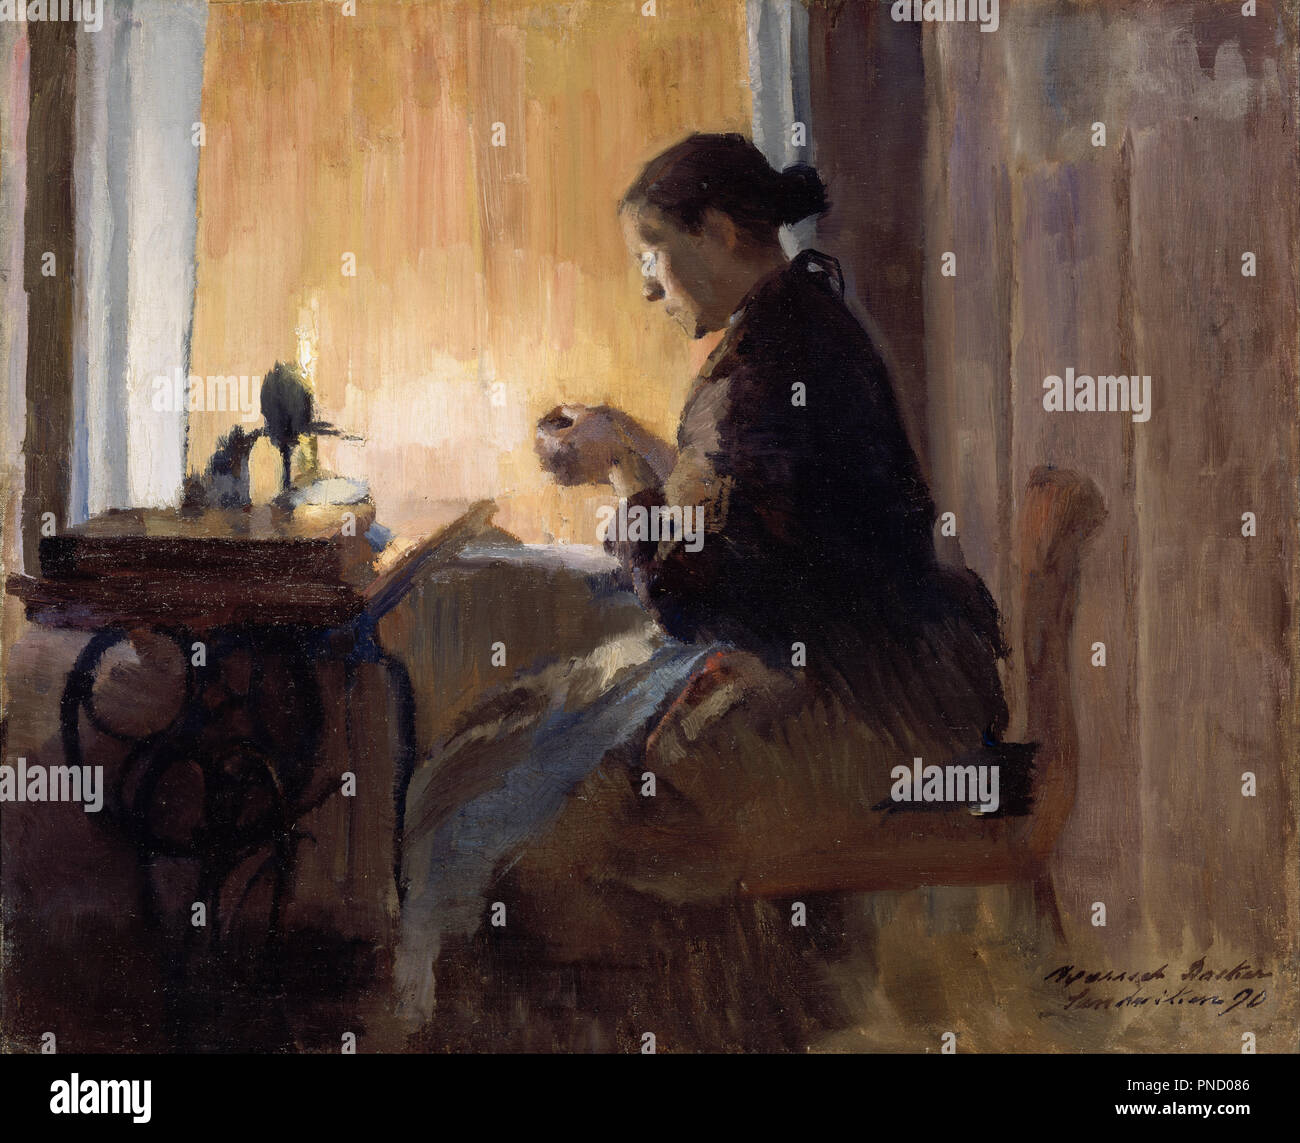 By Lamp Light. Date/Period: 1890. Painting. Olje på lerret oppklebet på treplate. Height: 36 cm (14.1 in); Width: 44 cm (17.3 in). Author: HARRIET BACKER. Stock Photo